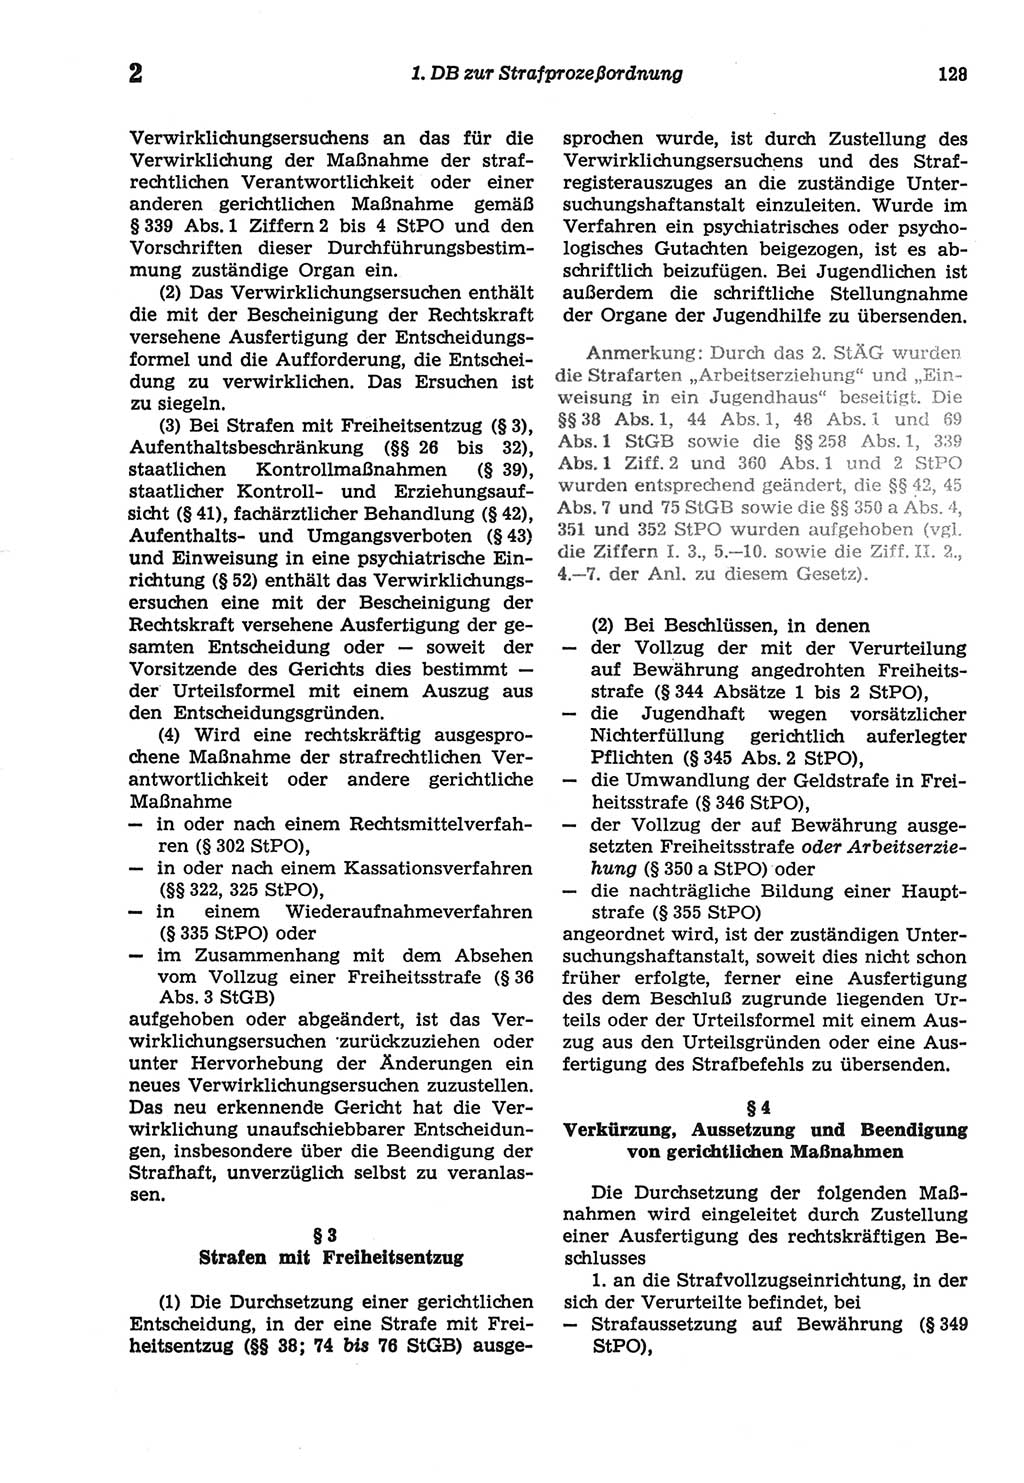 Strafprozeßordnung (StPO) der Deutschen Demokratischen Republik (DDR) sowie angrenzende Gesetze und Bestimmungen 1977, Seite 128 (StPO DDR Ges. Best. 1977, S. 128)